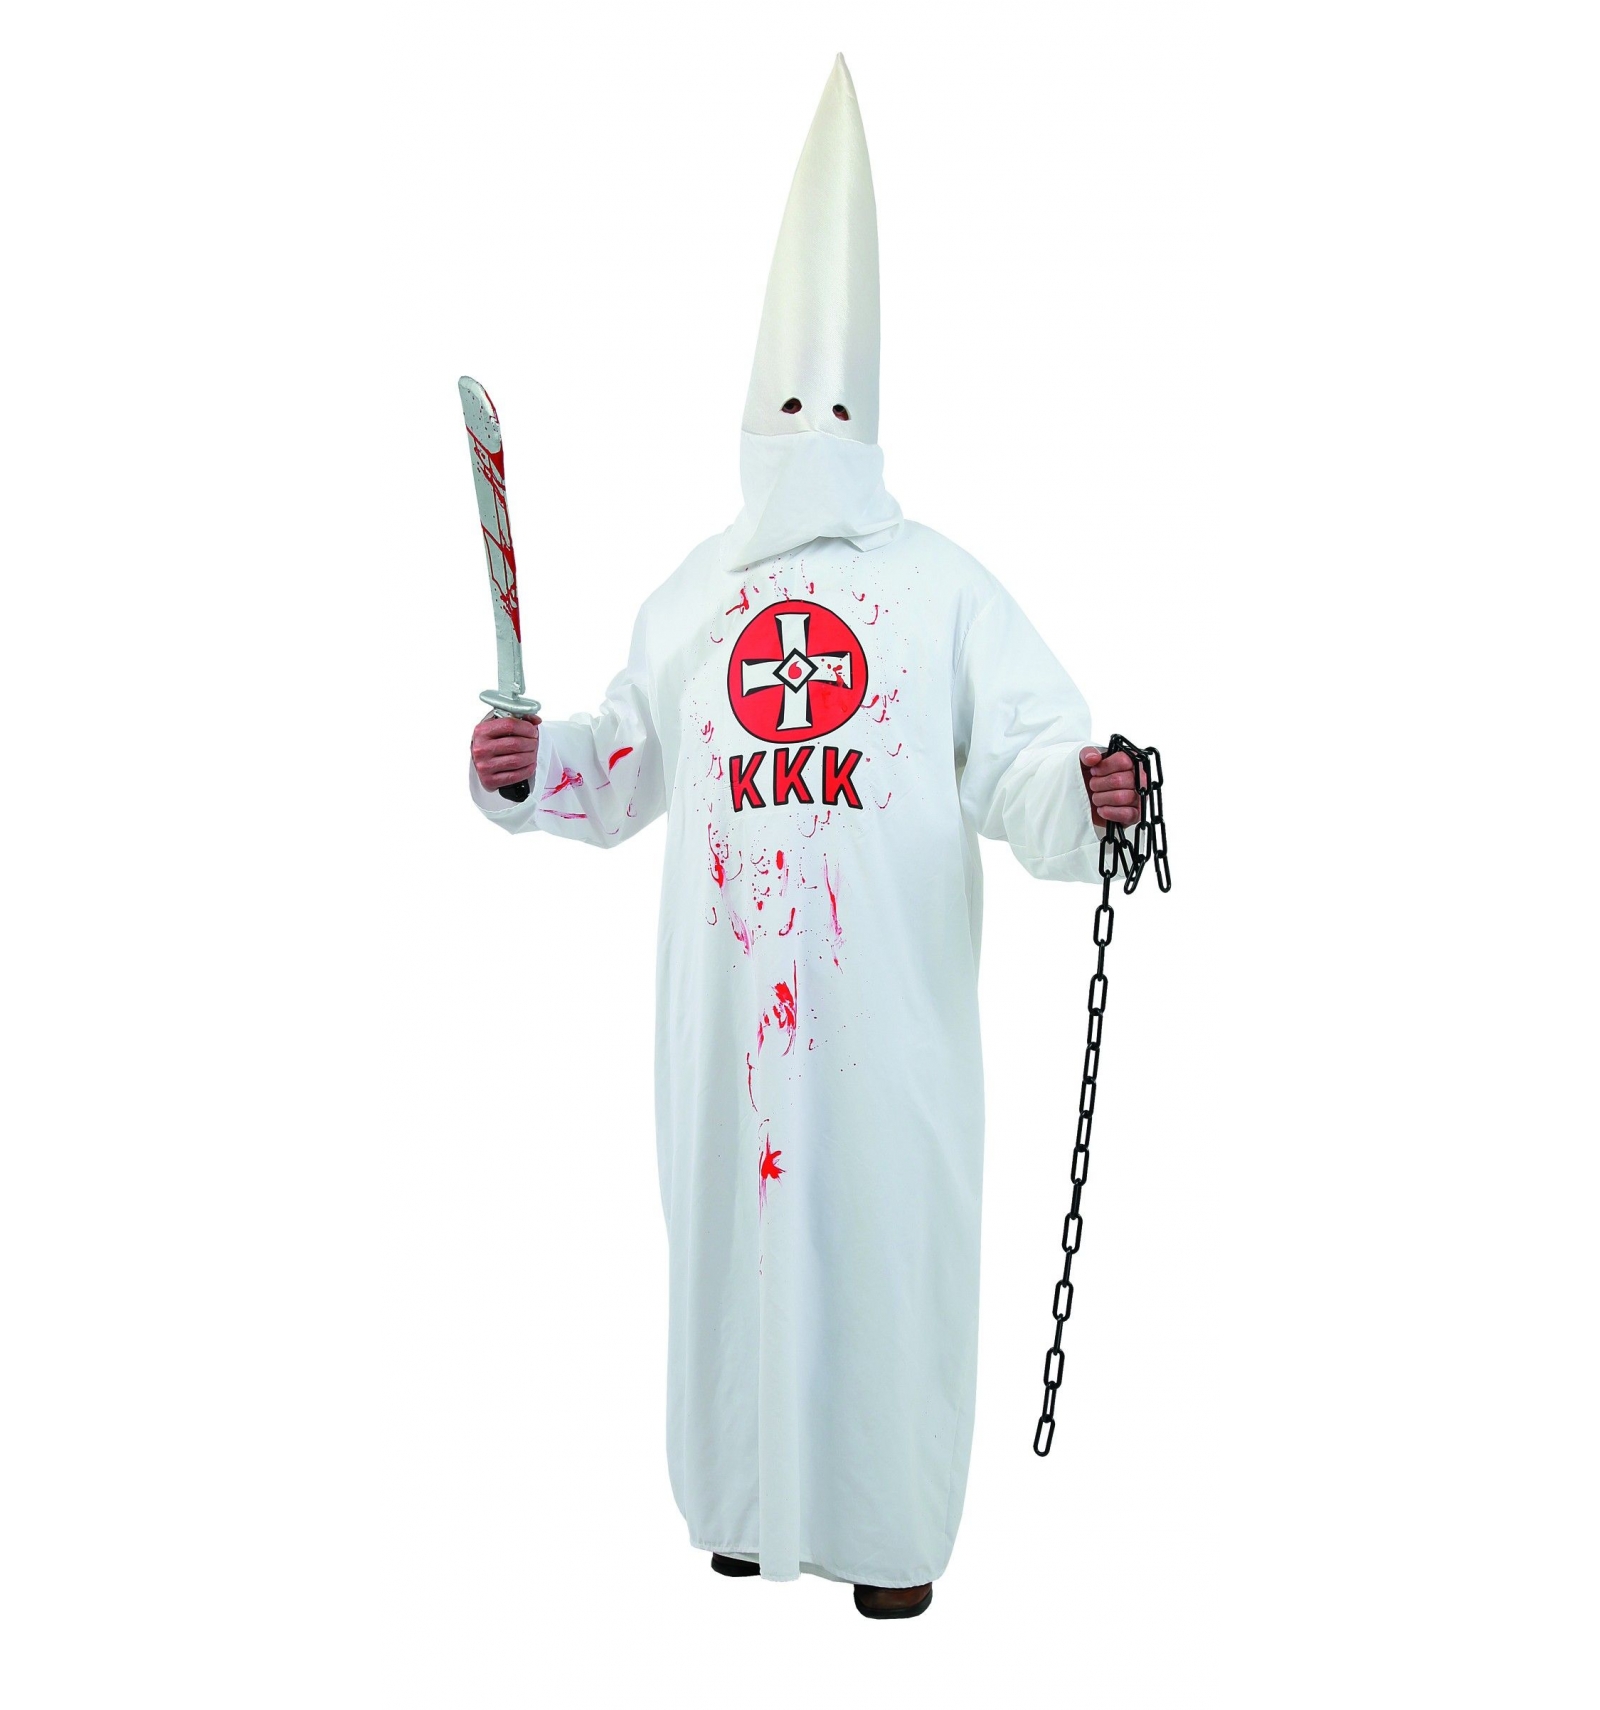 Ku-Klux-Klan costume